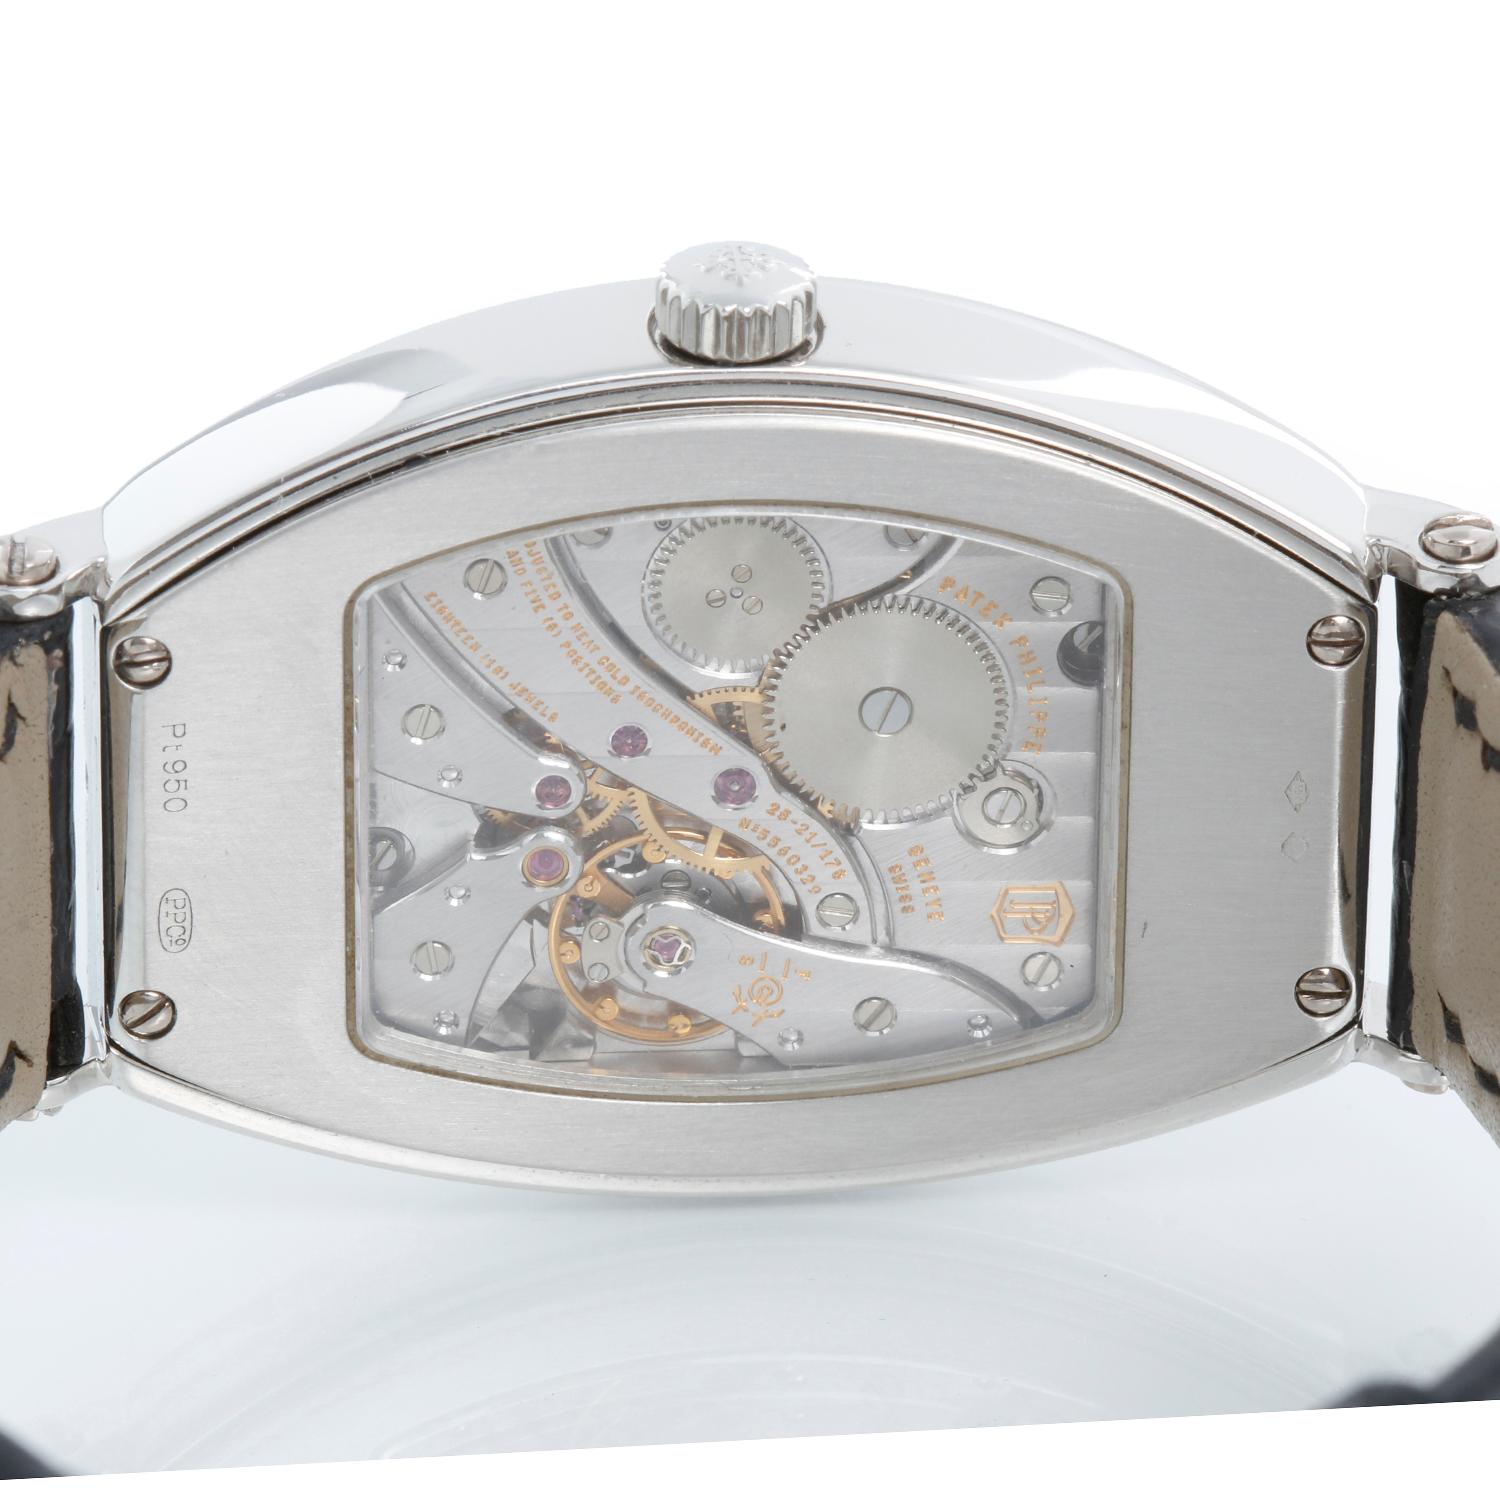 Patek Philippe Chronometro Gondolo Platinum Men's Watch  5098 P (or 5098P) 2